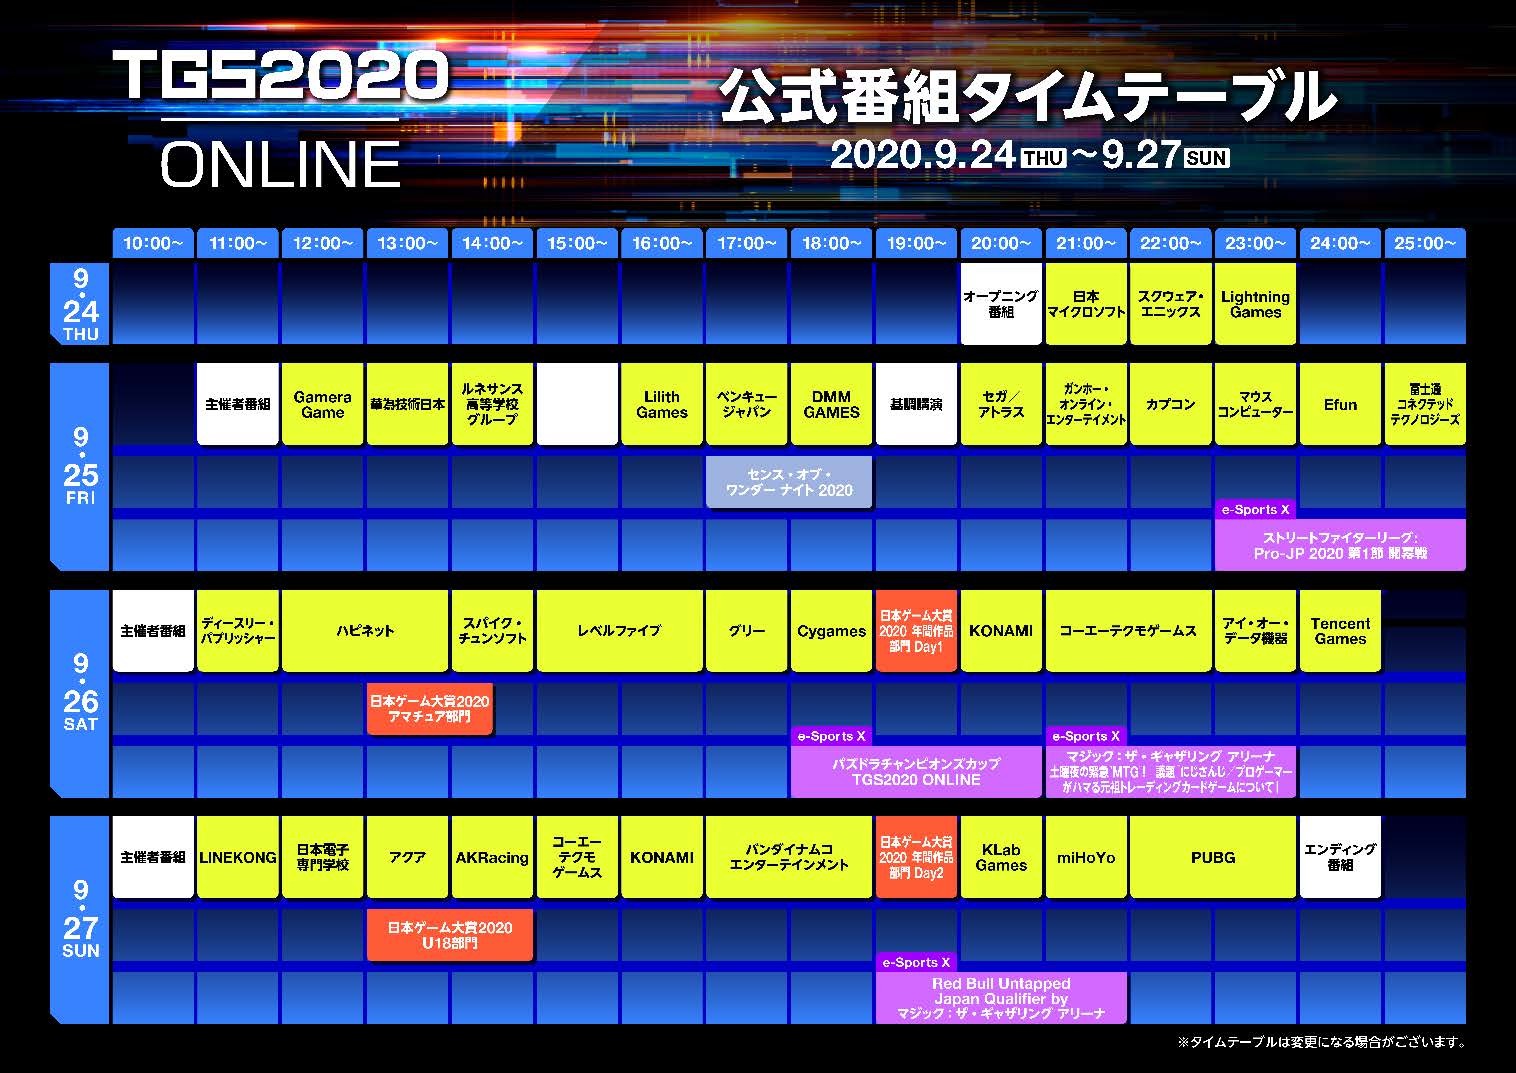 「東京ゲームショウ2020 オンライン」公式番組タイムテーブル